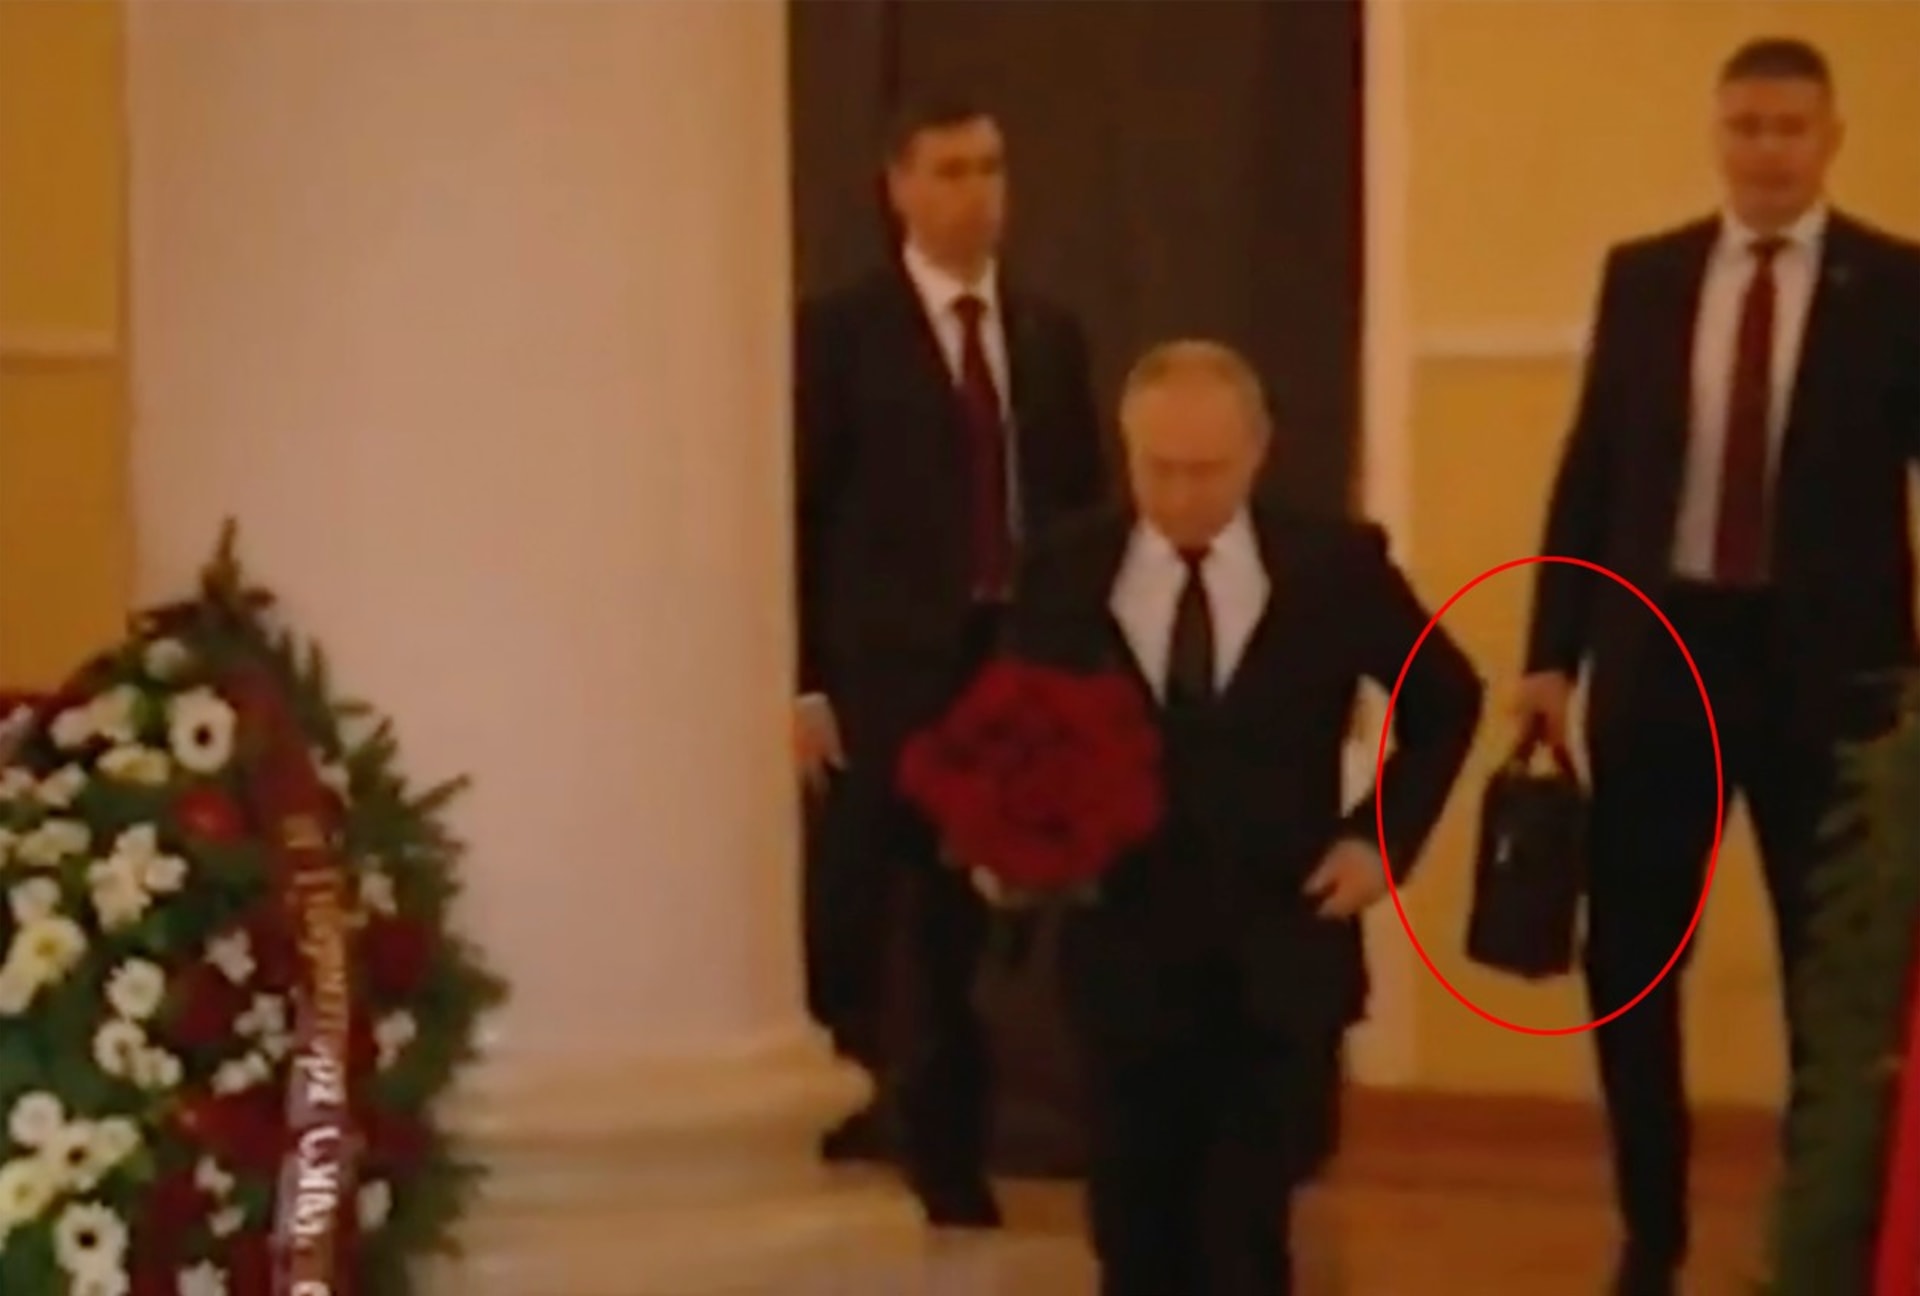 Ruský prezident Vladimir Putin na pohřeb Vladimira Žirinovského přišel v doprovodu. Jeden z důstojníků zřejmě držel jaderný kufřík. Putin se zřejmě obával atentátu.